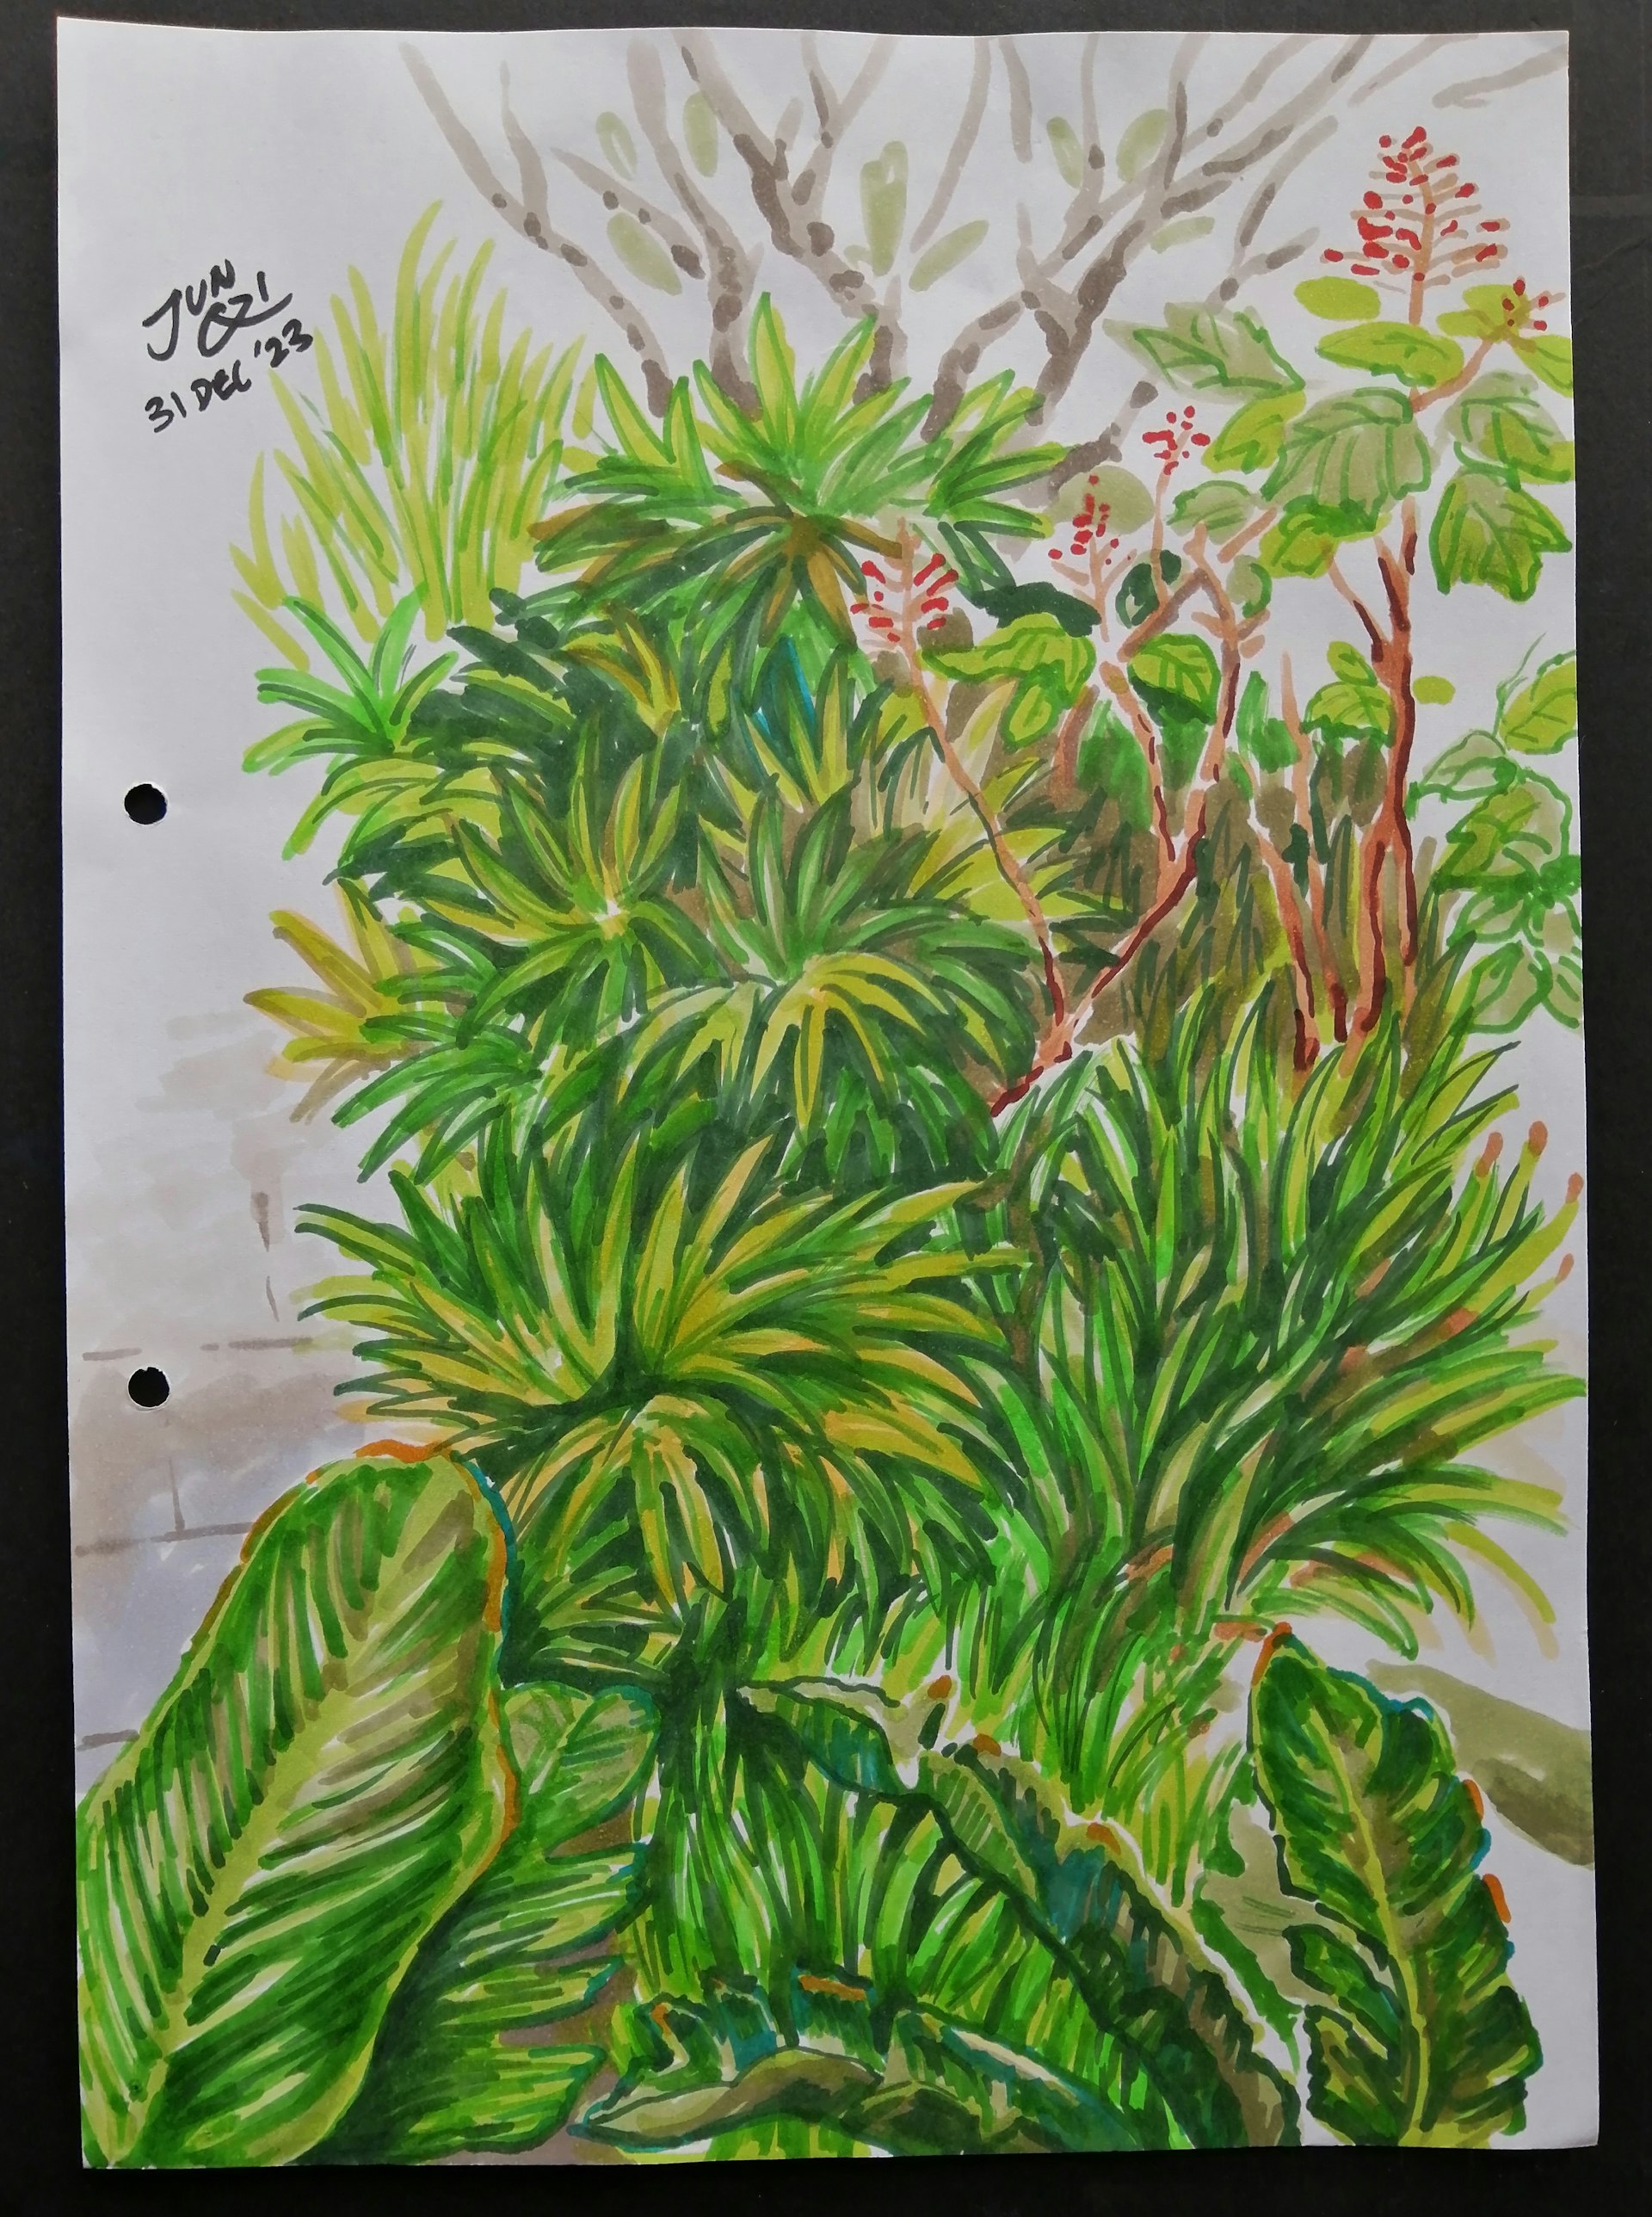 Copic marker sketch of foliage in my condo